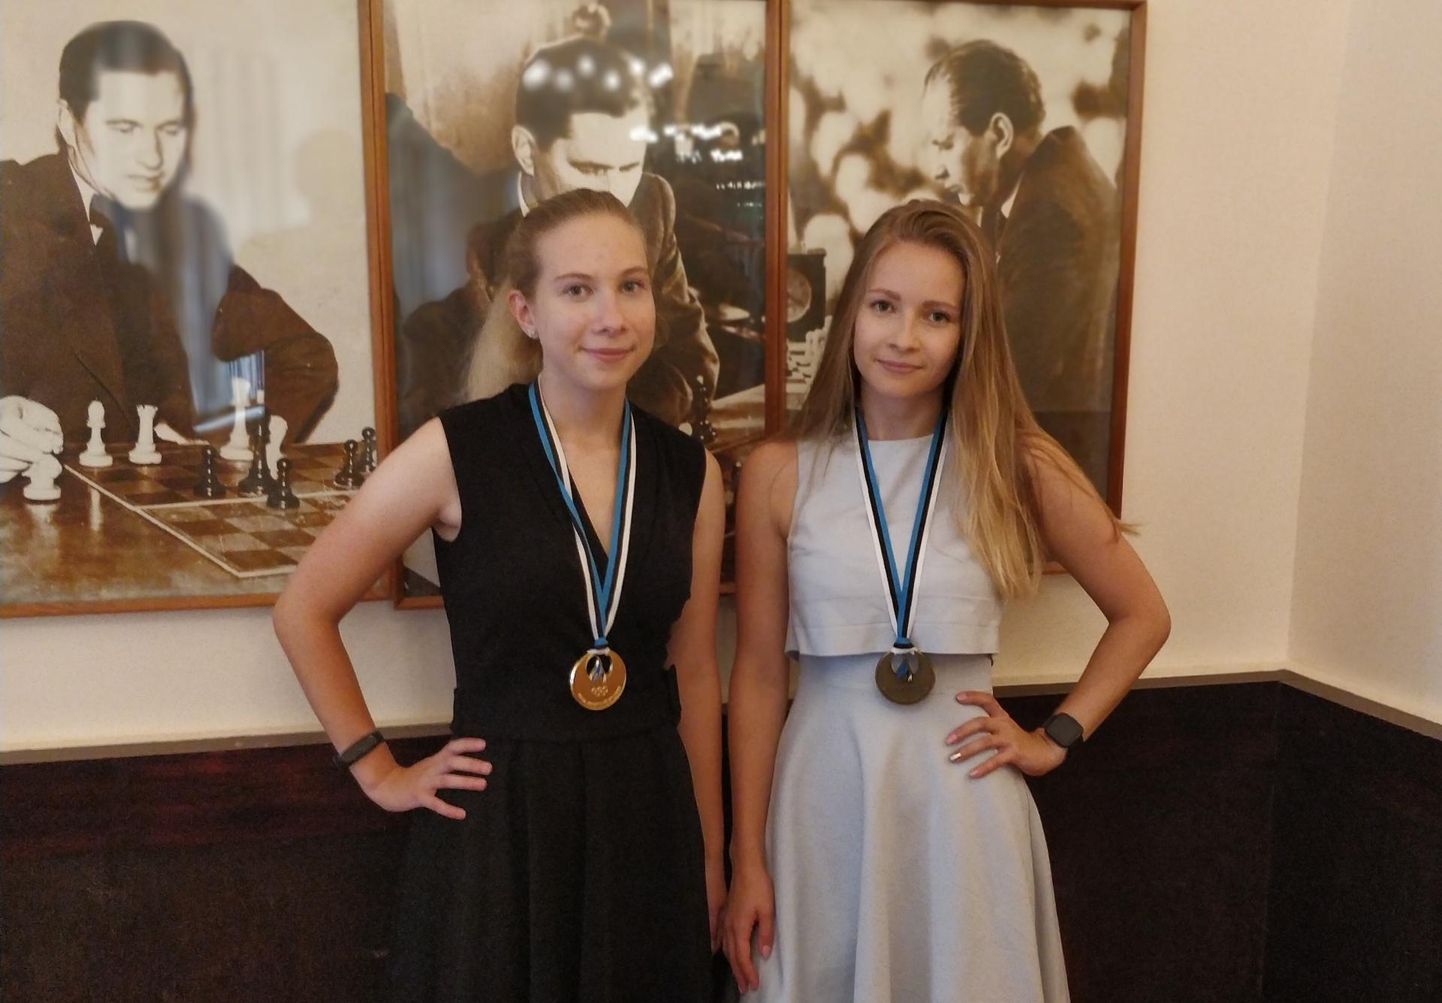 2020. aasta august, Eesti naiste meistrivõistluse lõppedes. Mai Narva(vasakul) võitis kulla, Triin pronksmedali. Seriaali "Lipugambiit" vaatasid nad mõlemad suure huviga. 